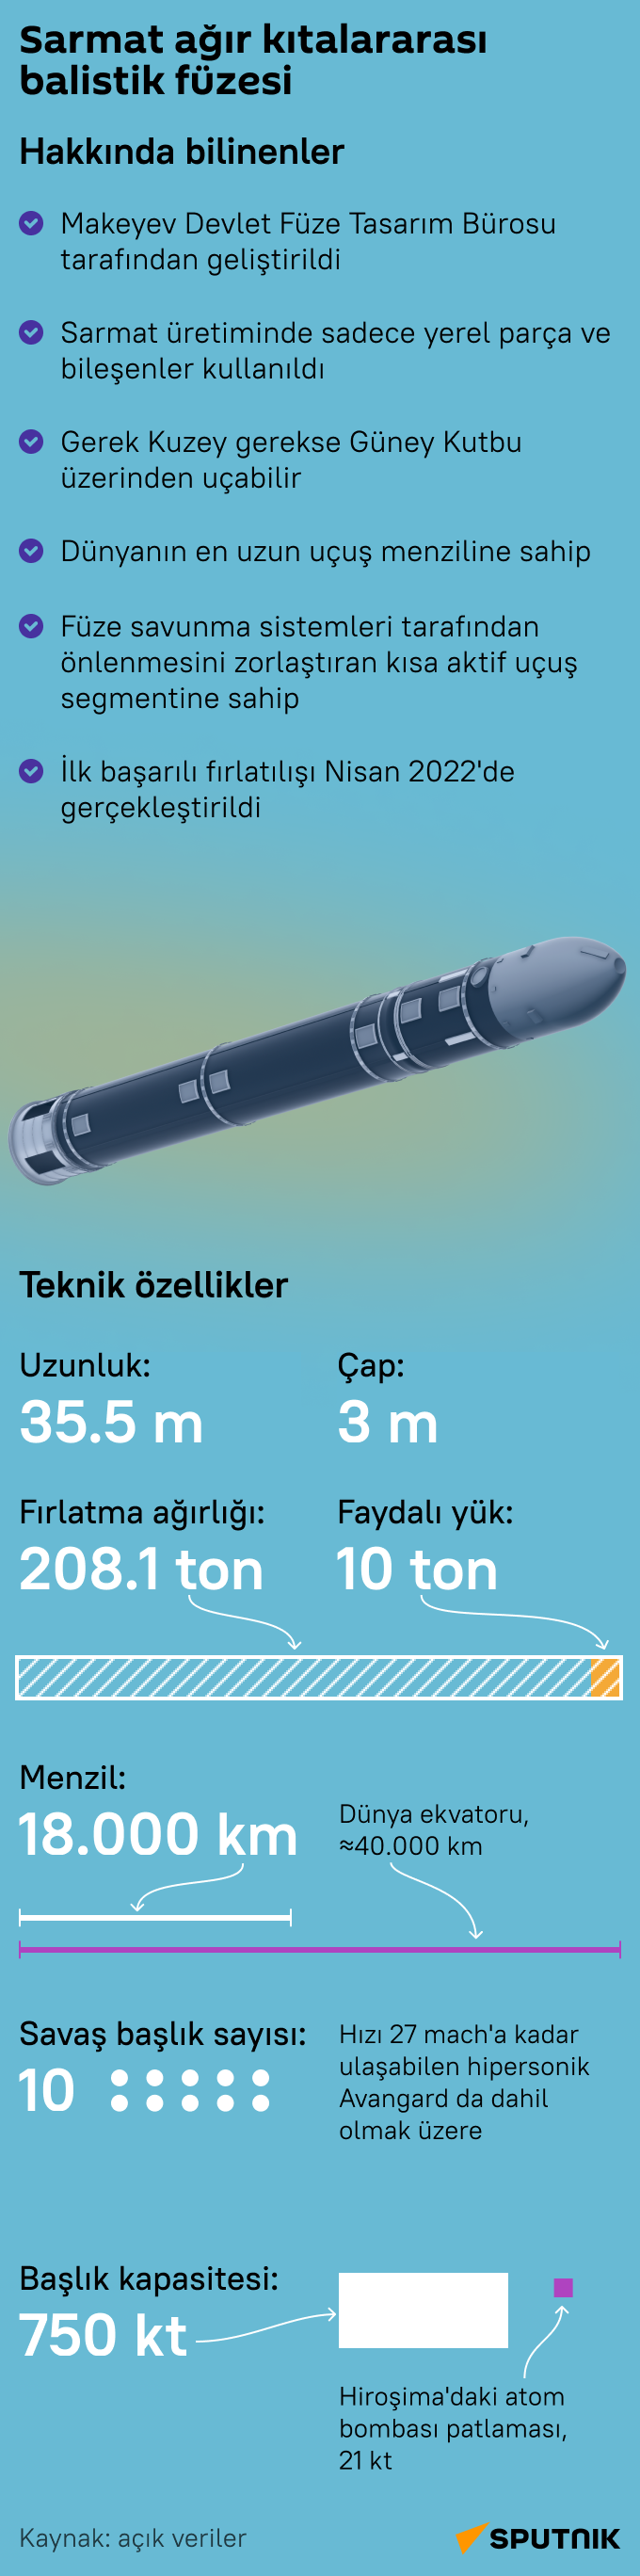 Rus Sarmat kıtalararası balistik füzesi hakkında neler biliniyor?  infografik  - Sputnik Türkiye